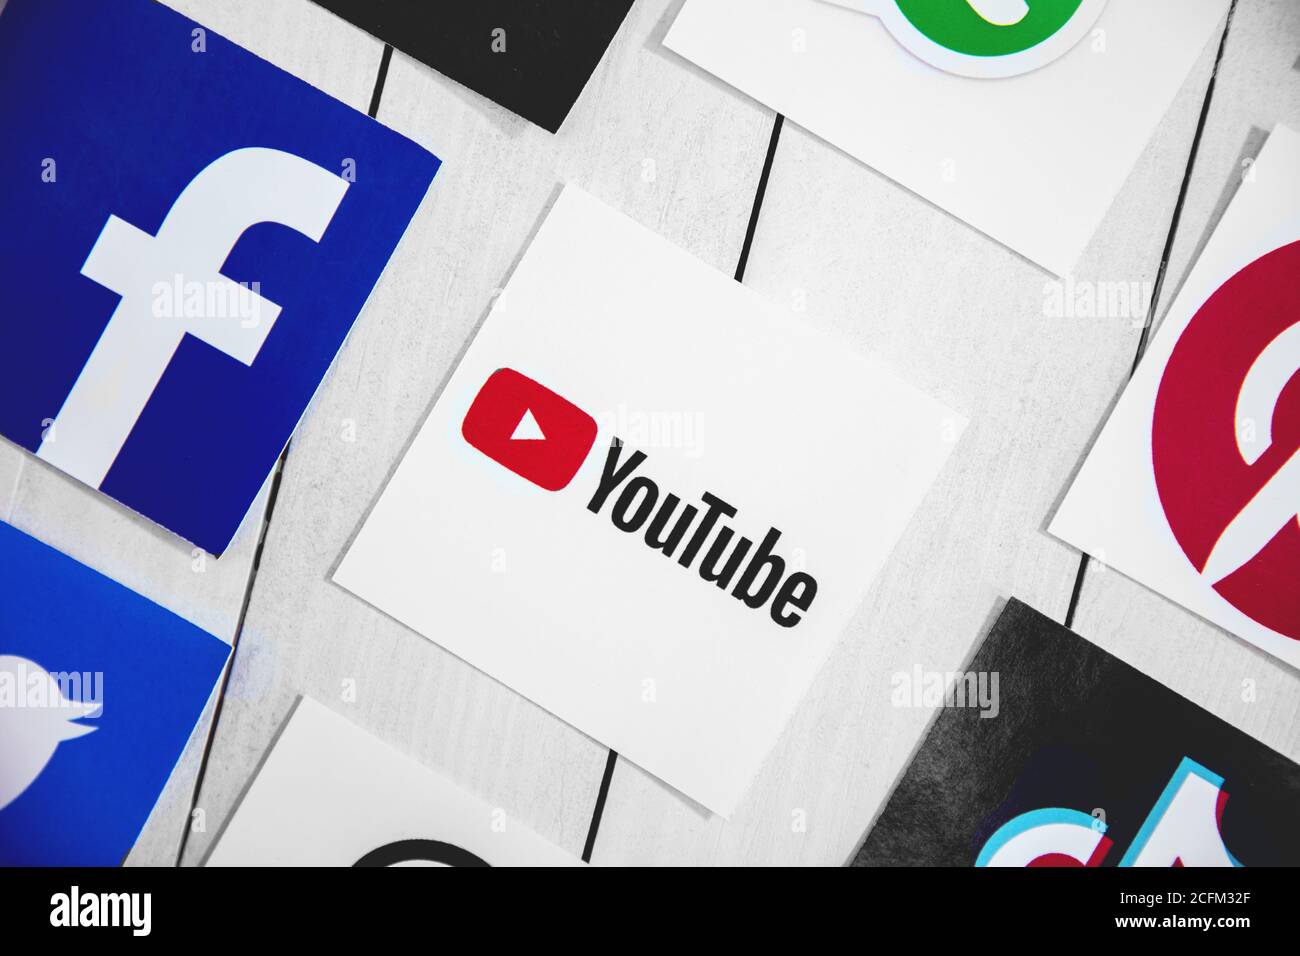 WROCLAW, POLOGNE - 29 août 2020 : symboles des médias sociaux avec logo Youtube au milieu sur parquet. YouTube est un américain de partage de vidéo en ligne Banque D'Images